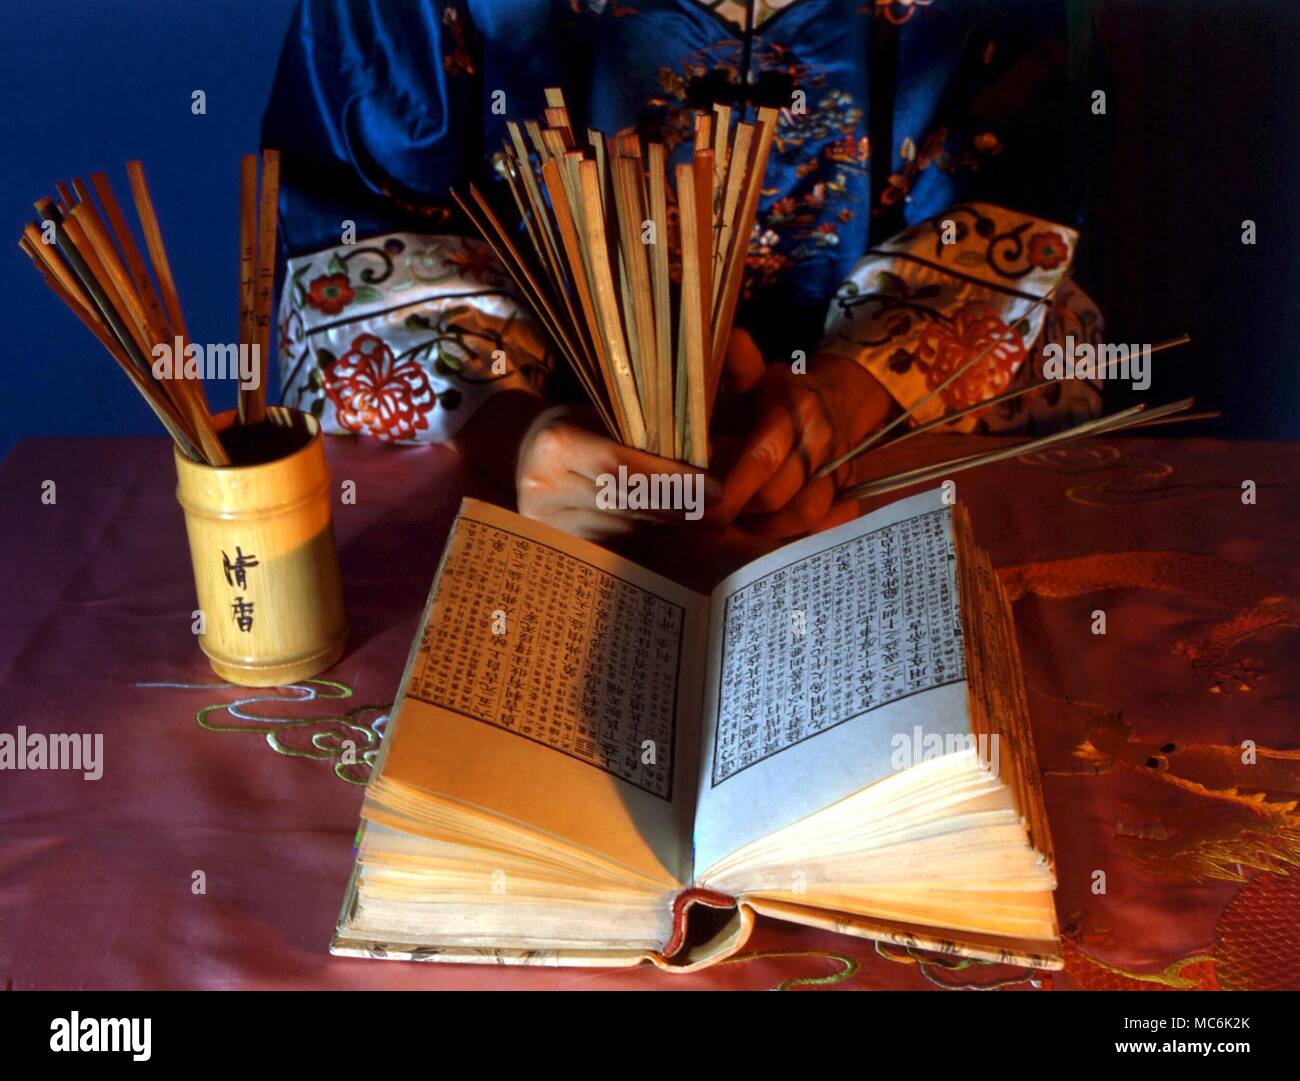 I CHING - matériel préparé pour un I Ching la lecture, avec des bâtons et une copie imprimée sur bois de l'I Ching texte en chinois Banque D'Images